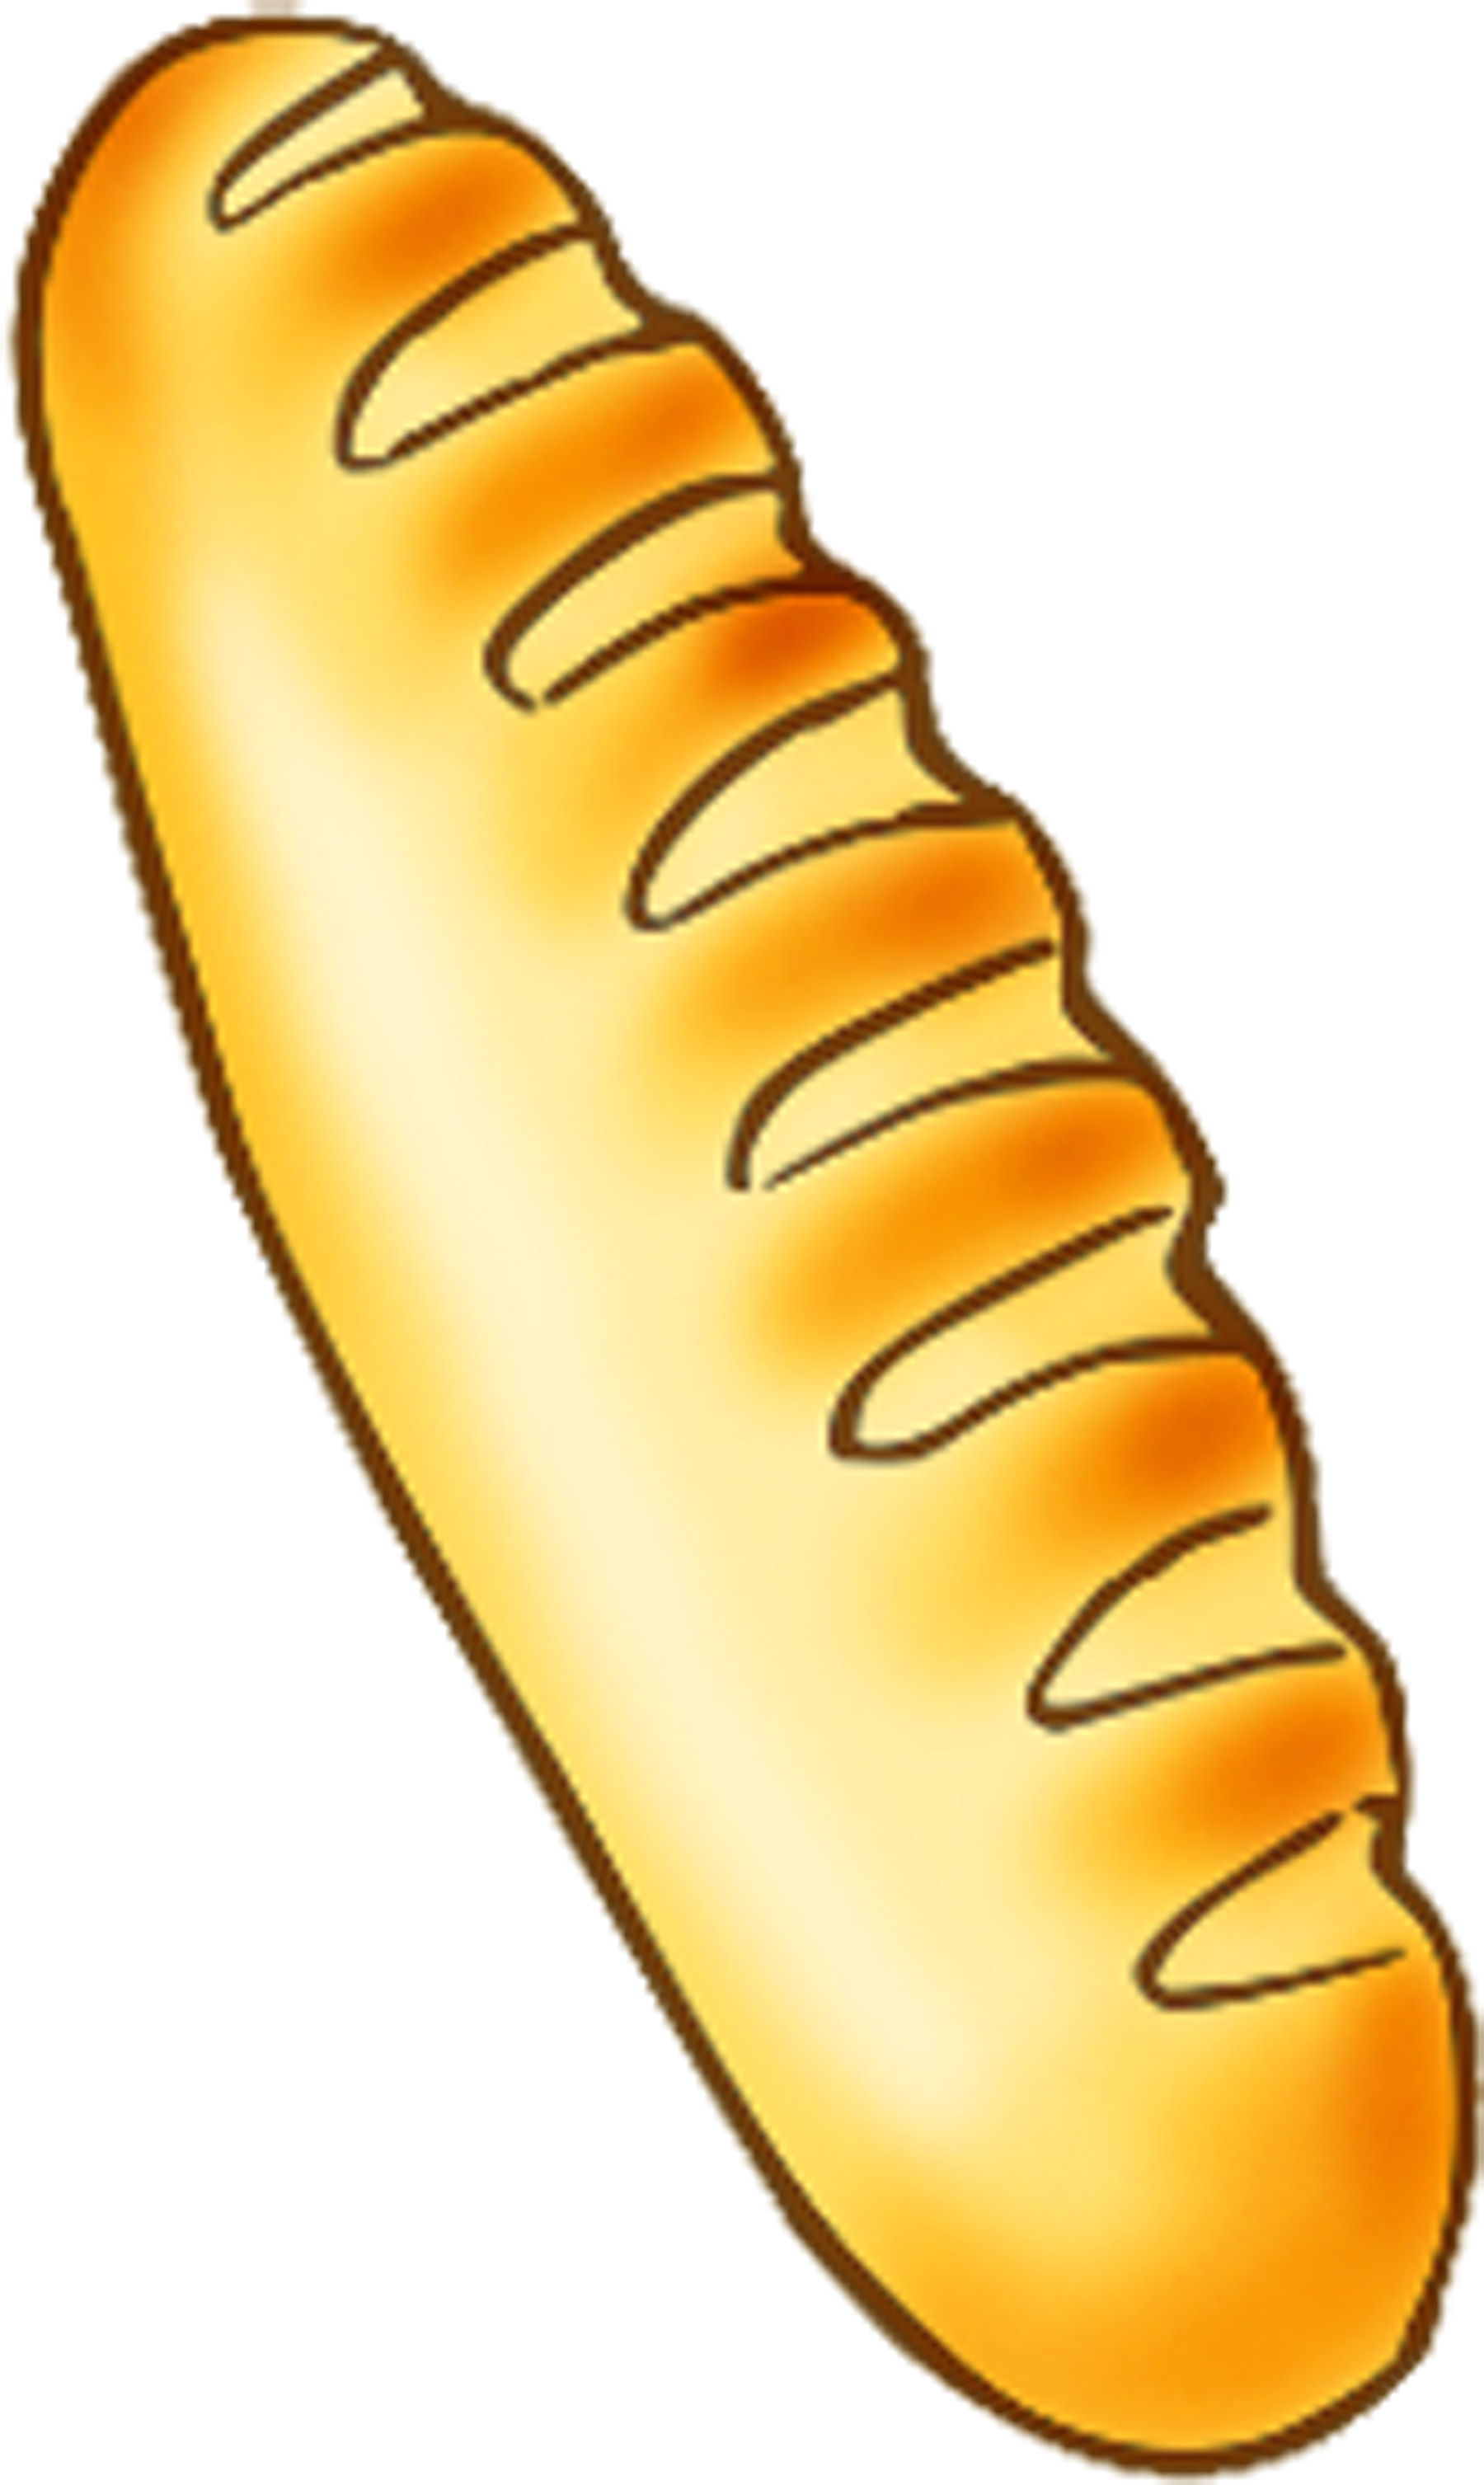 Loaf of bread clip art clipartix